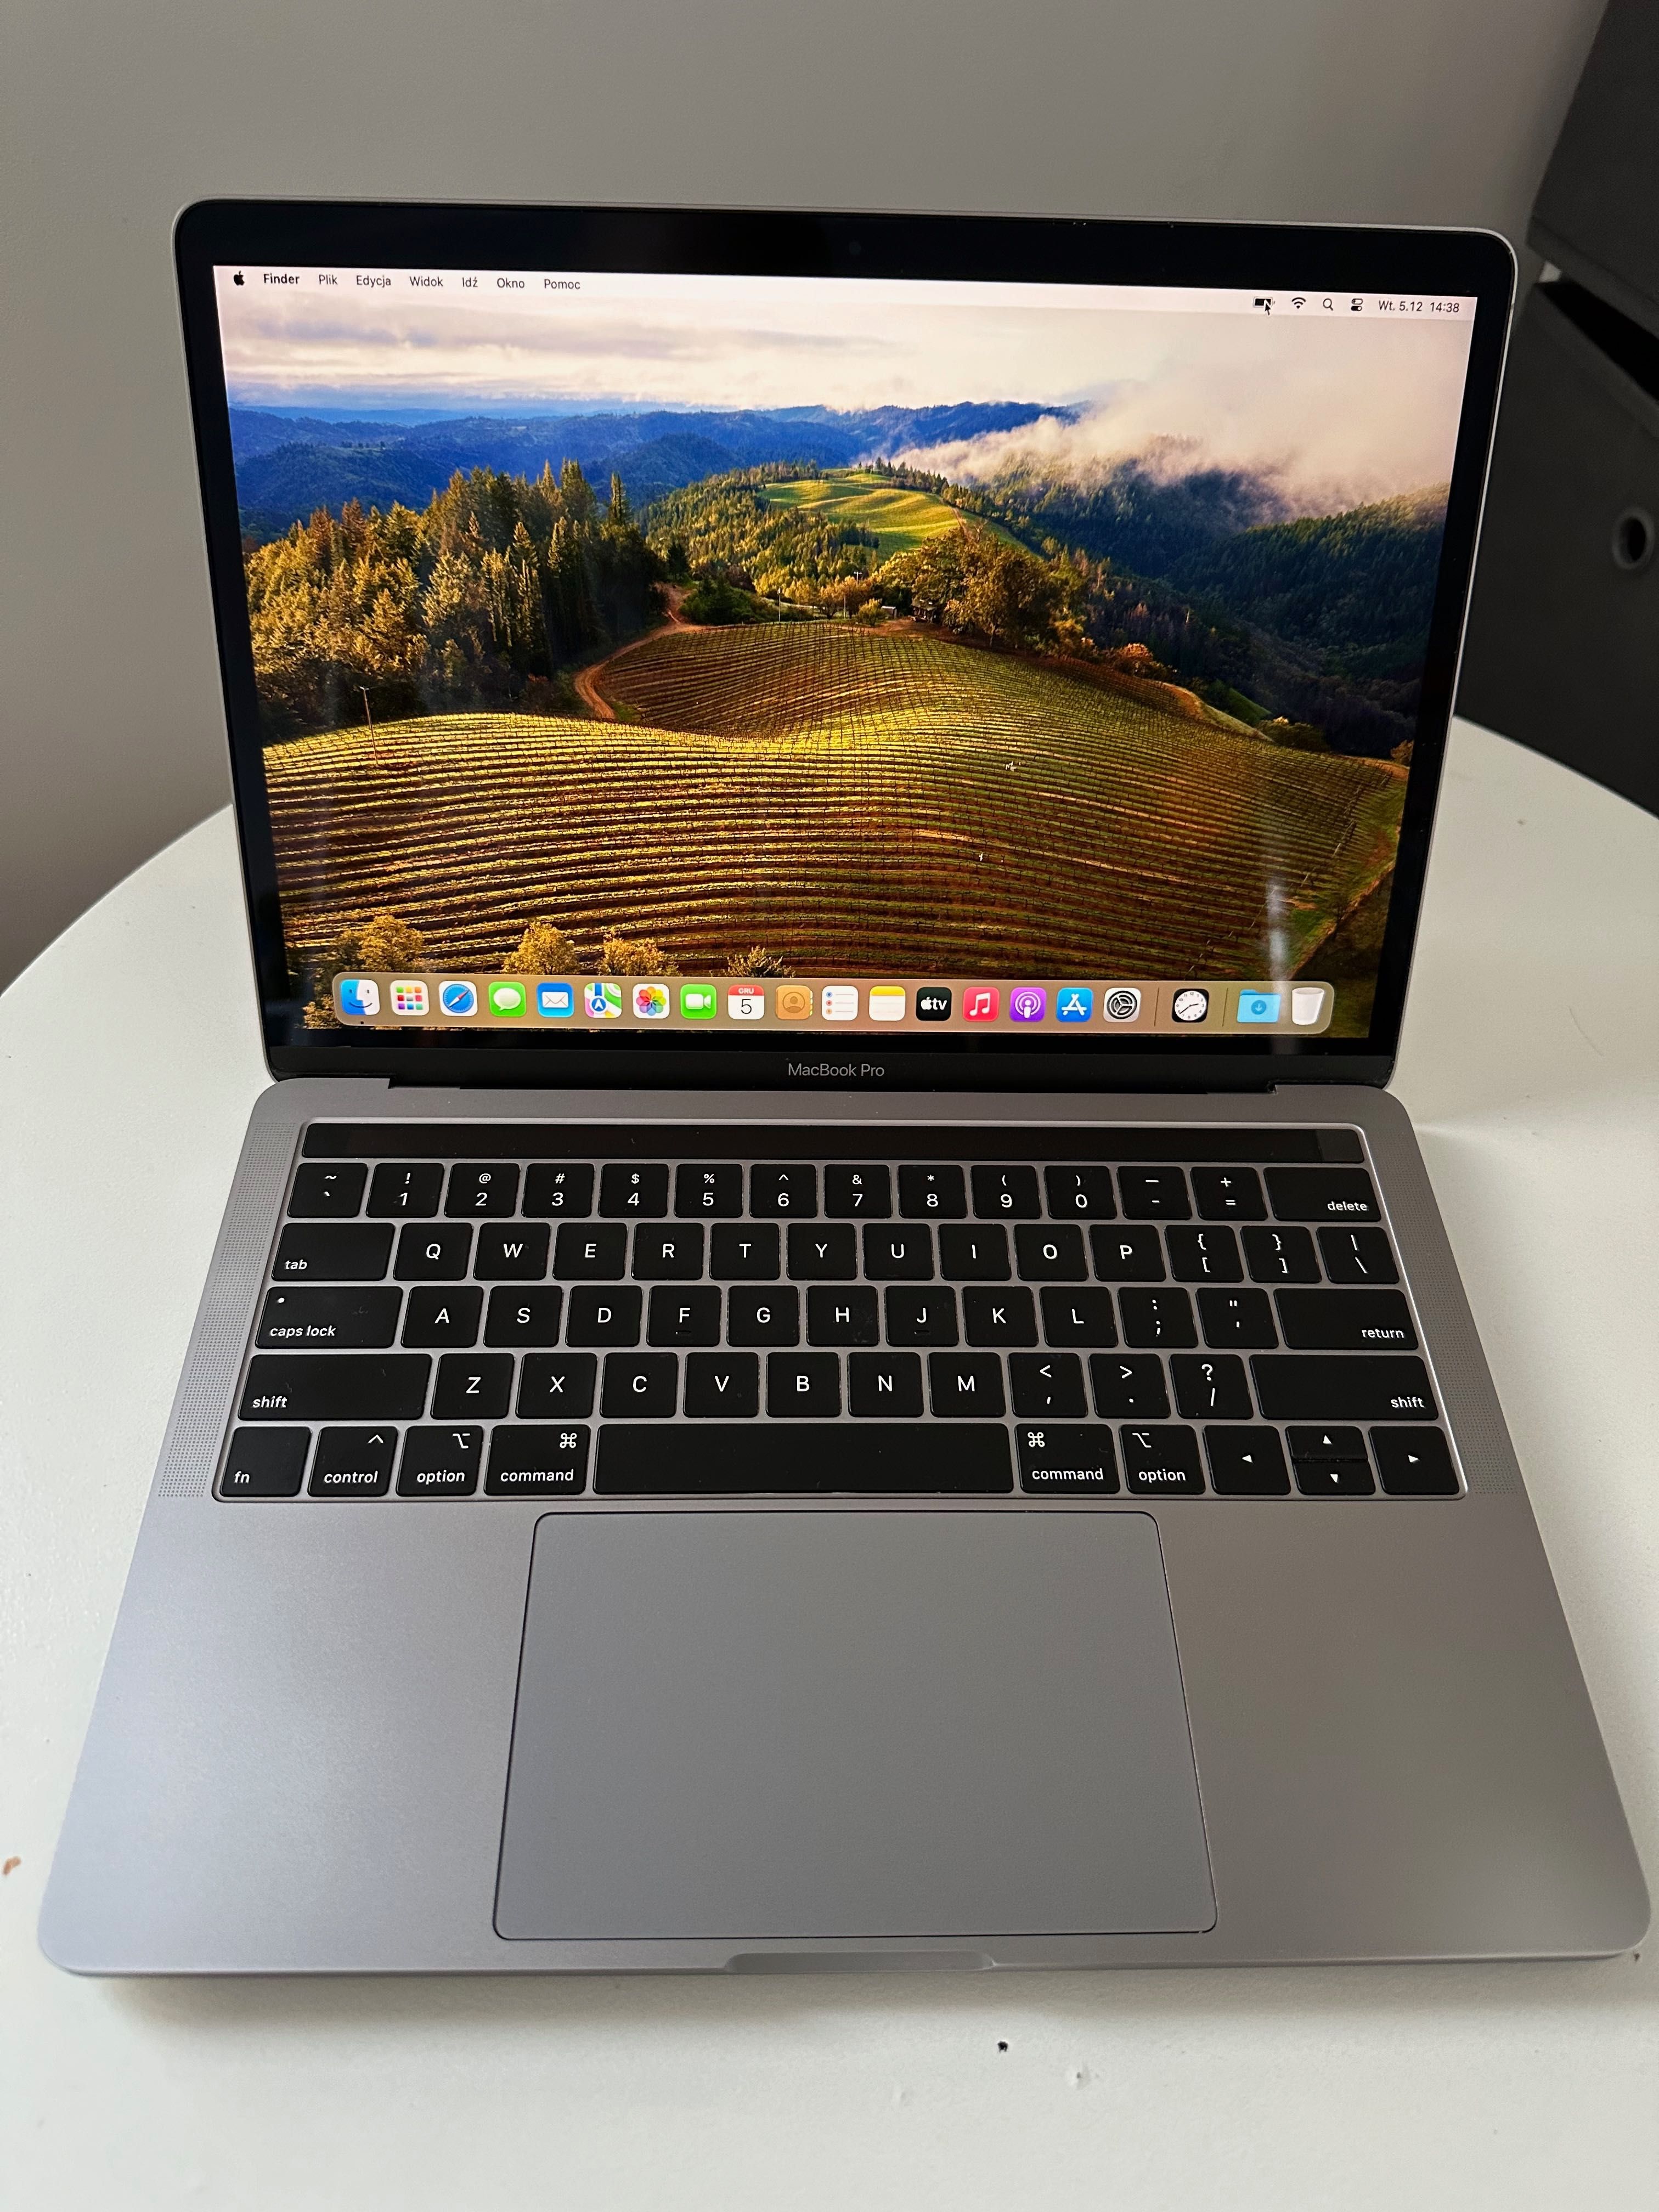 MacBook Pro 13" i5/16GB/1024GB 2018 A1989 - gwiezdna szarość